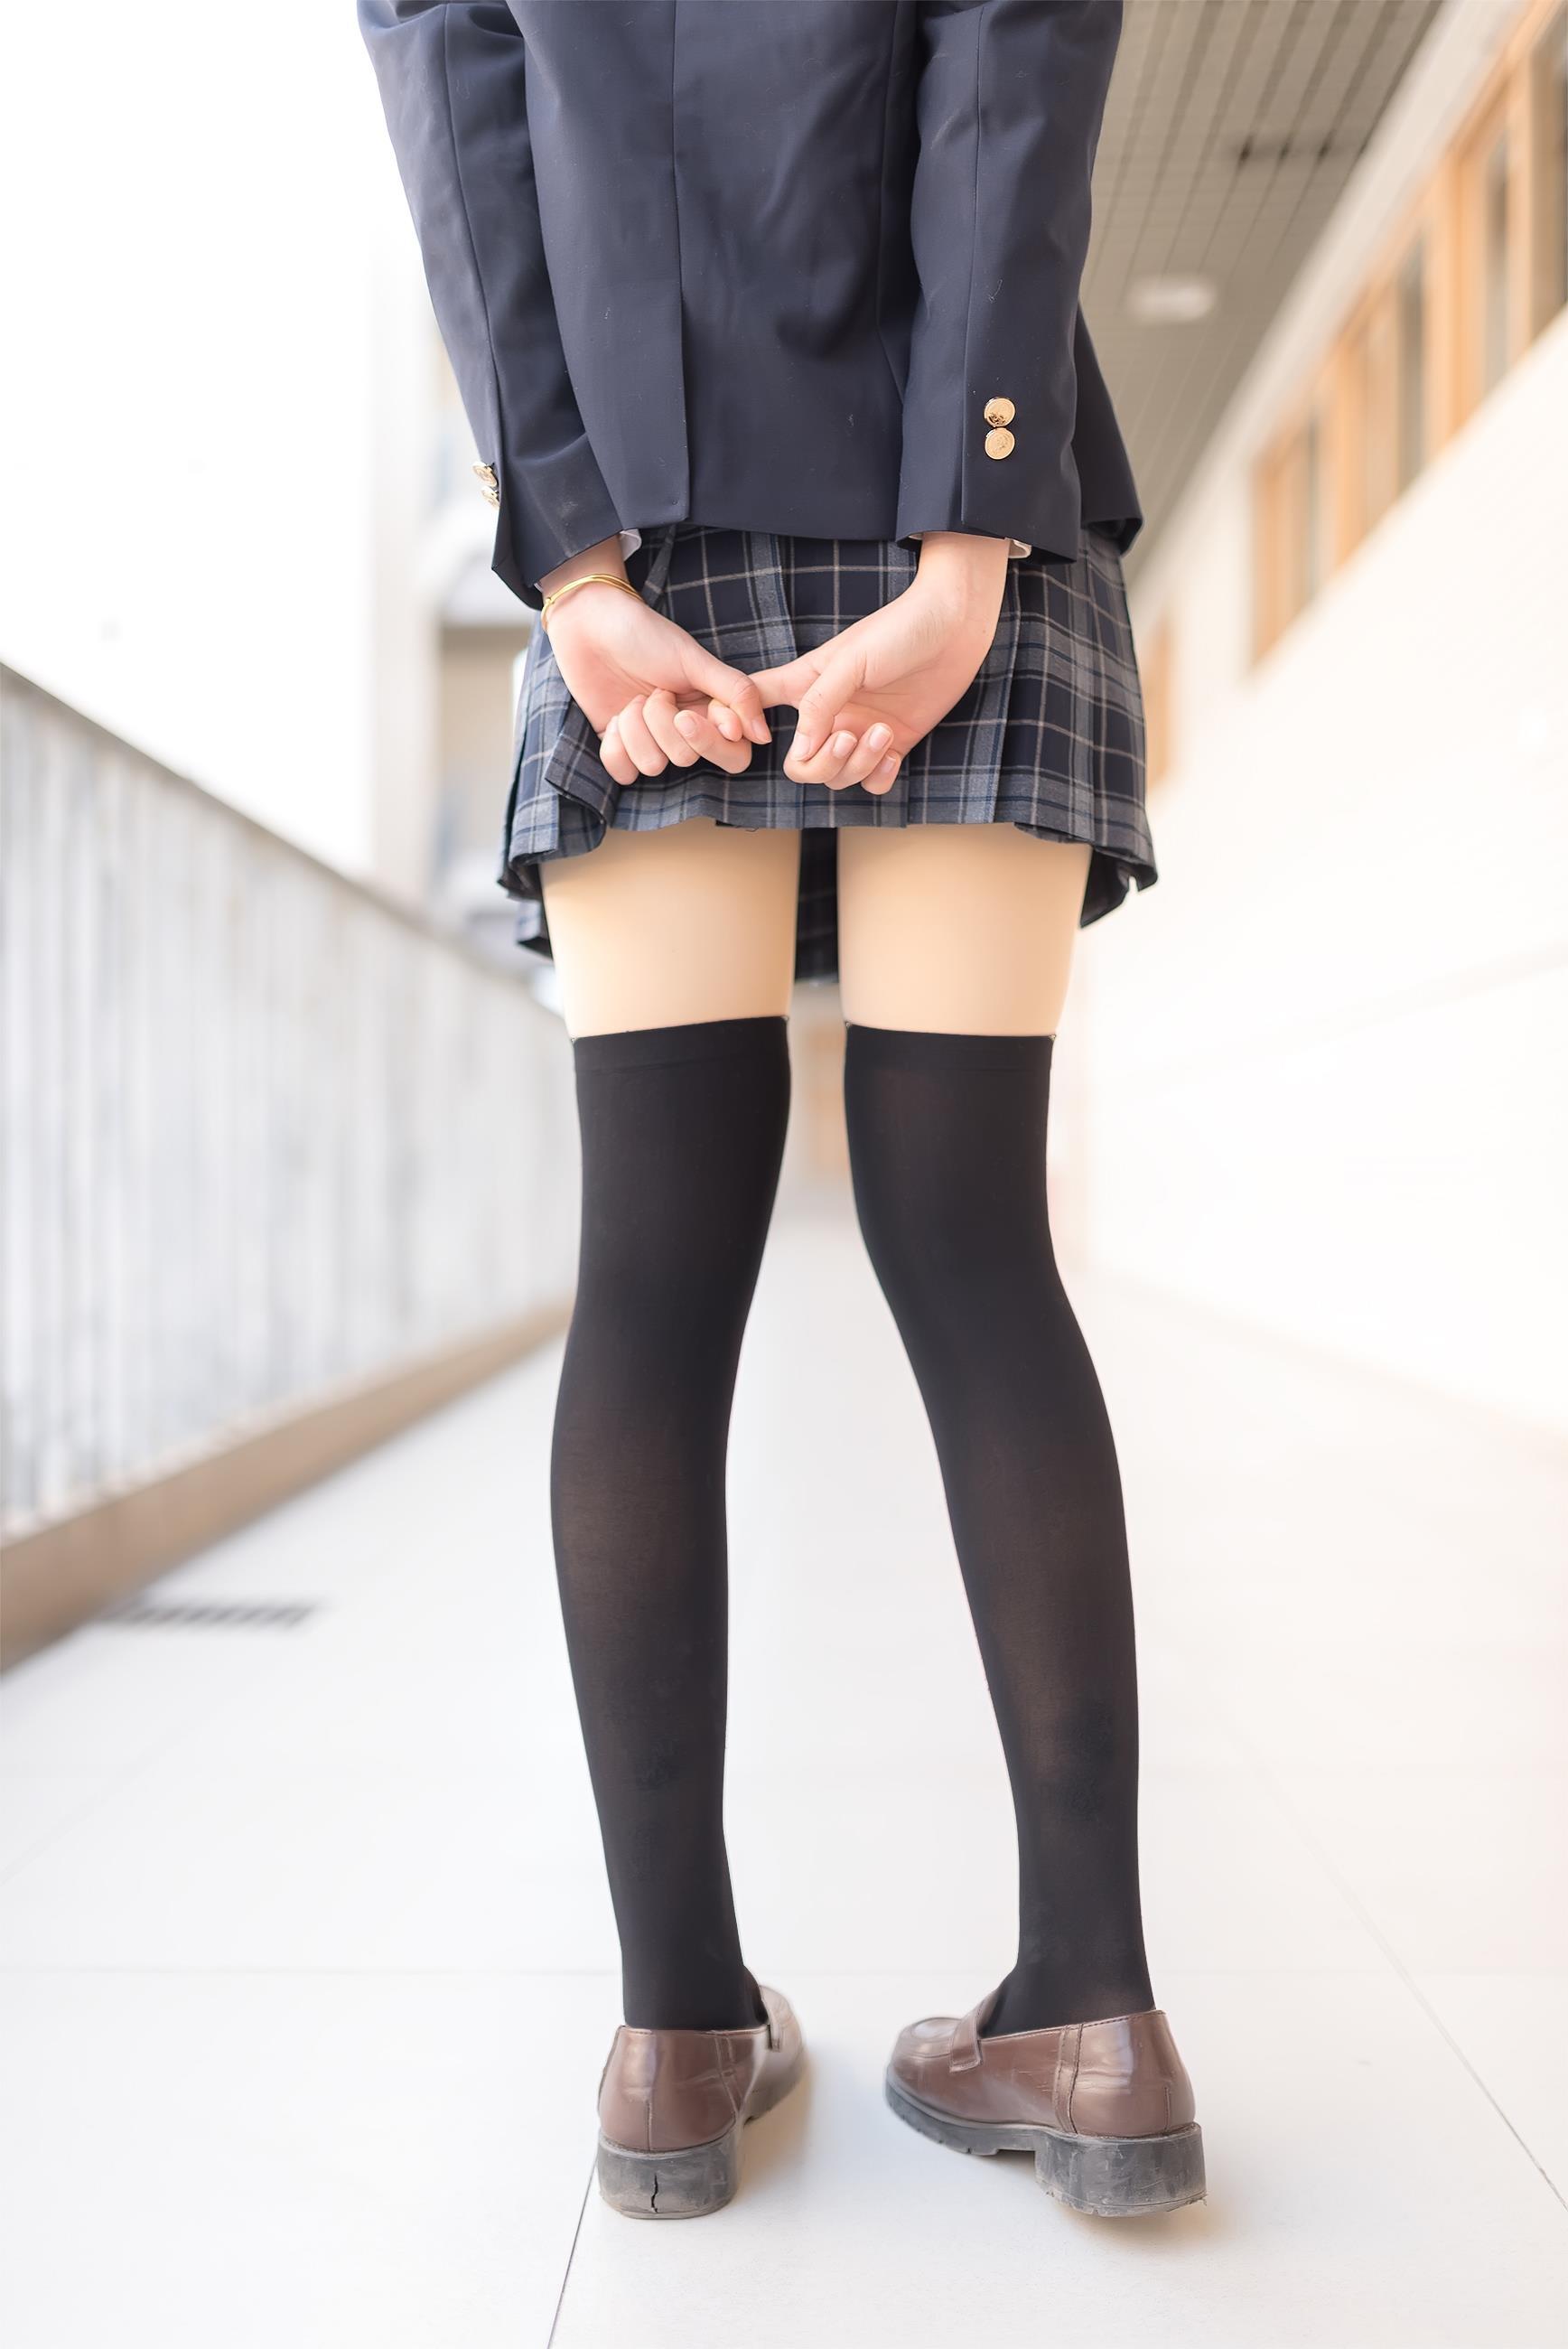 [风之领域]NO.016 性感小萝莉 黑色高中女生制服与格子短裙加黑色丝袜美腿玉足私房写真集,